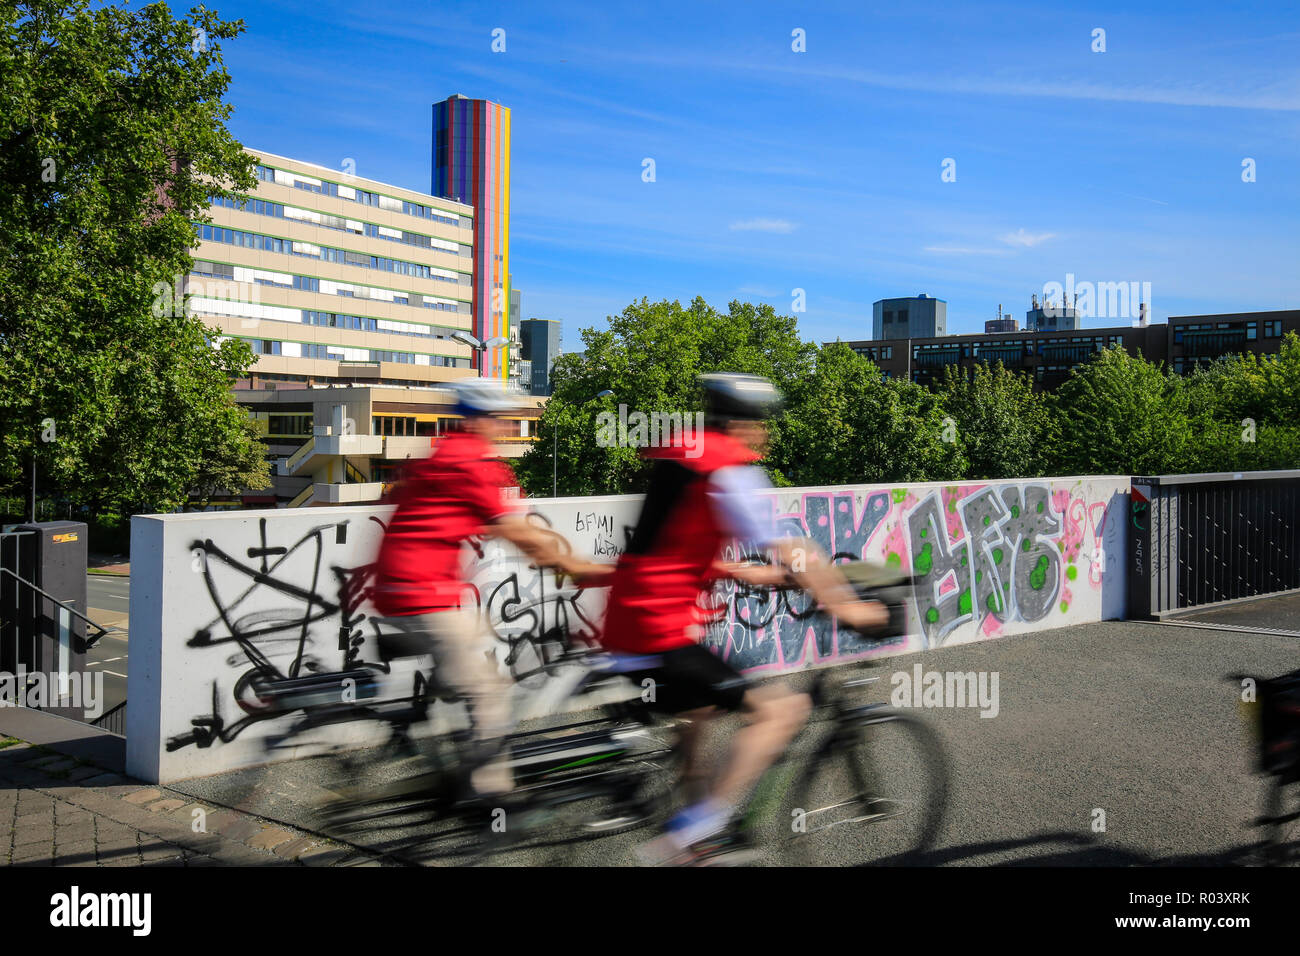 Ruhrgebiet Essen, Alemania, el proyecto de desarrollo urbano Gruene Essen Mitte, RS 1 ciclo express road Foto de stock